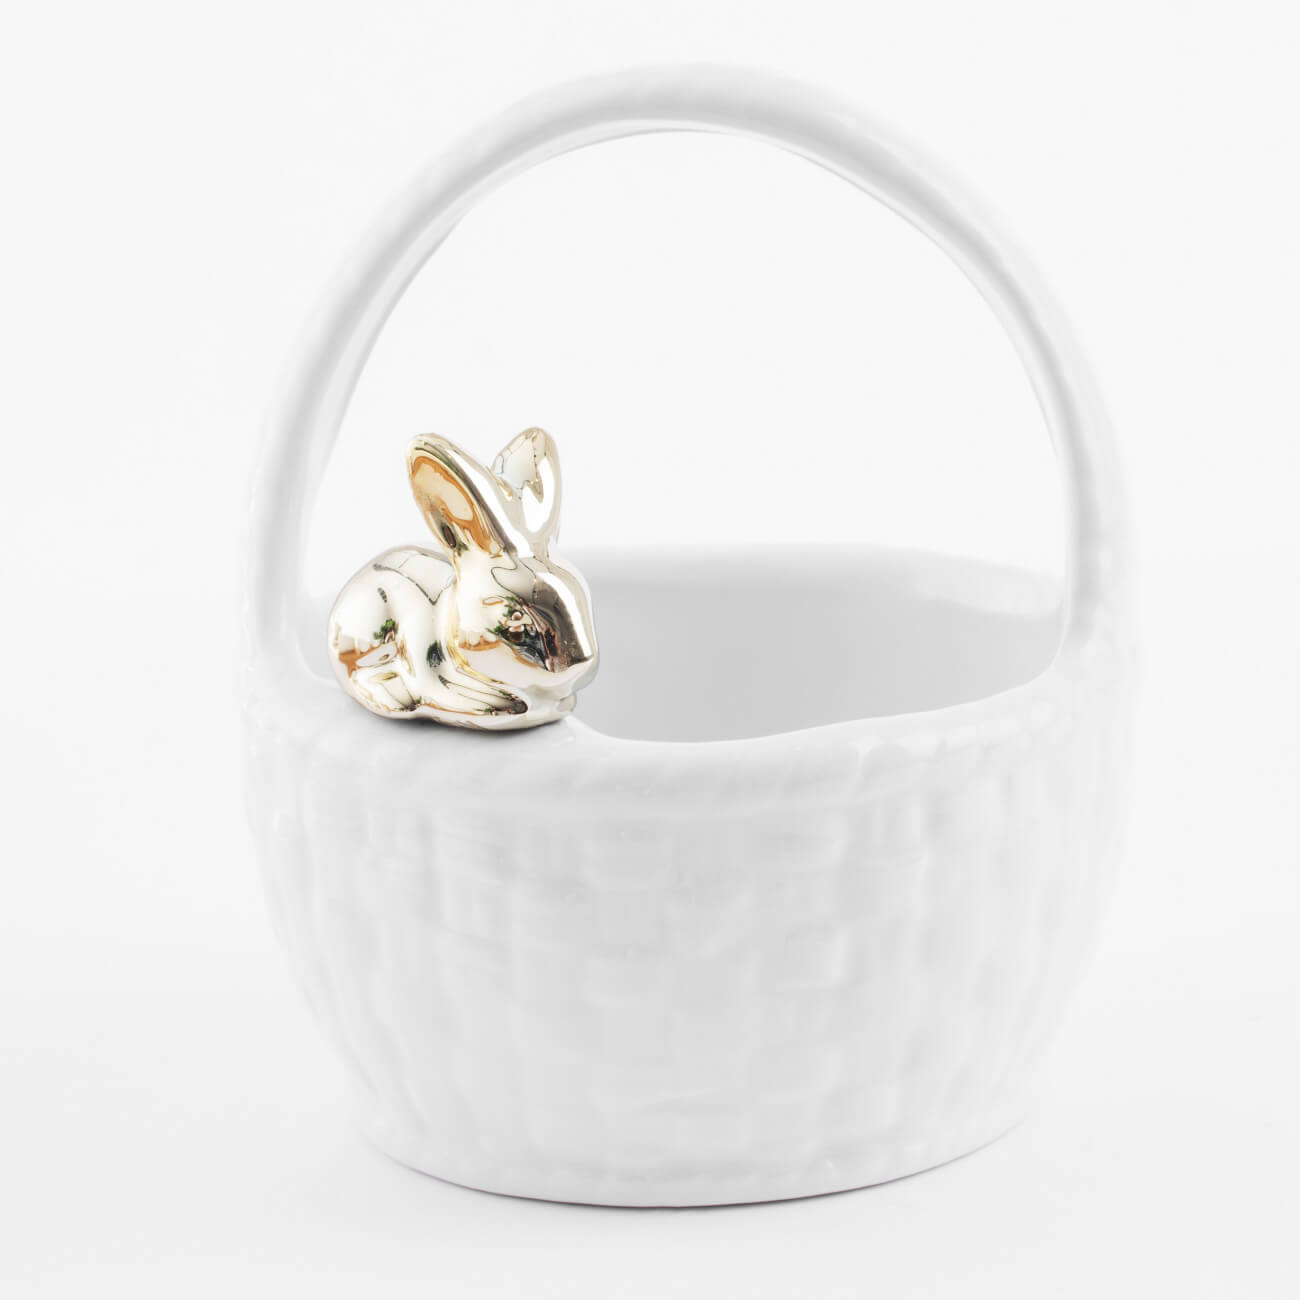 Конфетница, 12х14 см, с ручкой, керамика, белая, Кролик на корзине, Easter gold губка для посуды с ручкой и подставкой на липучке 2 сменные губки